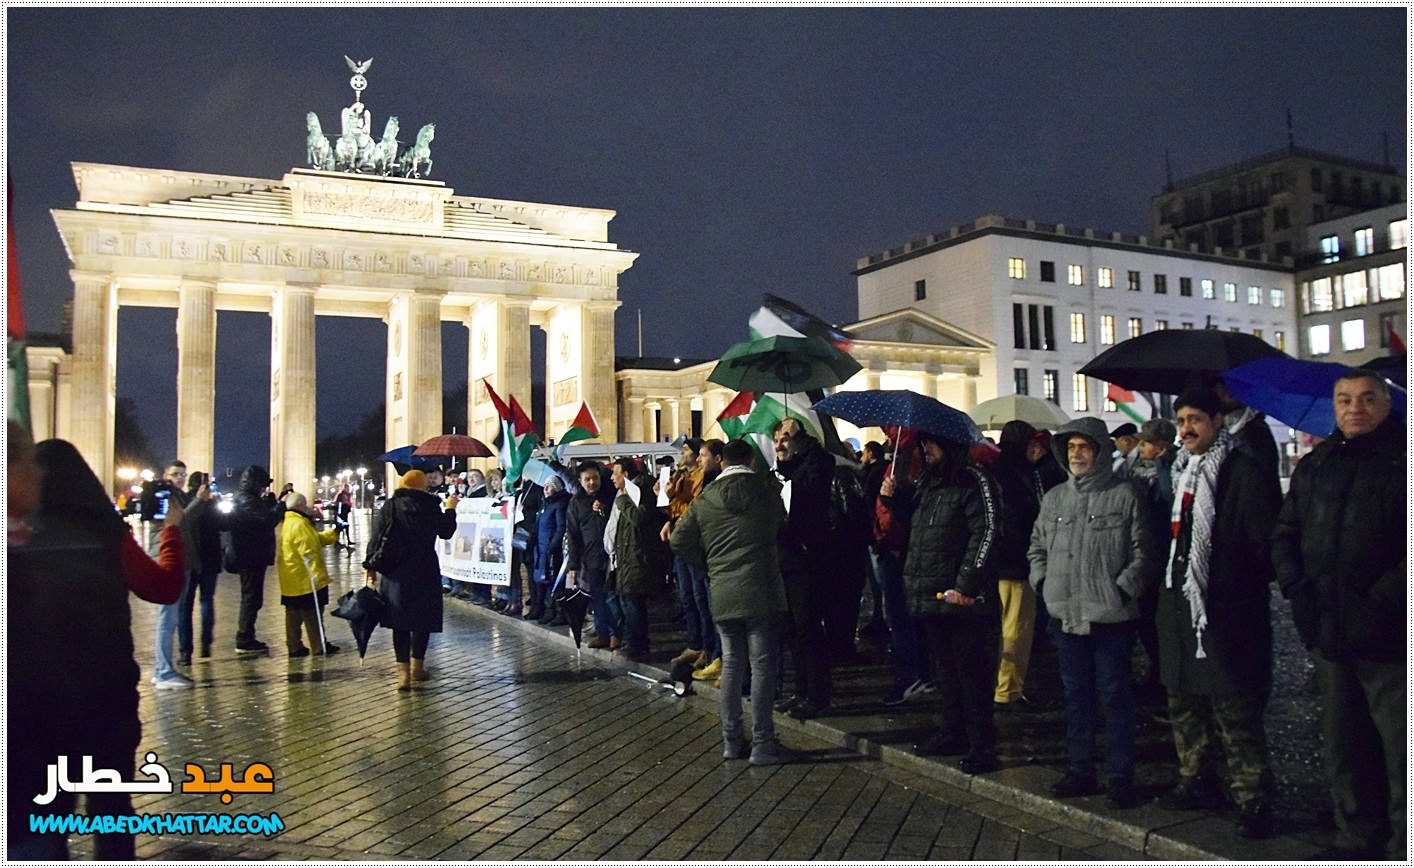 وقفة احتجاجية في العاصمة الالمانية برلين رفضا لقرار صفقة ترامب